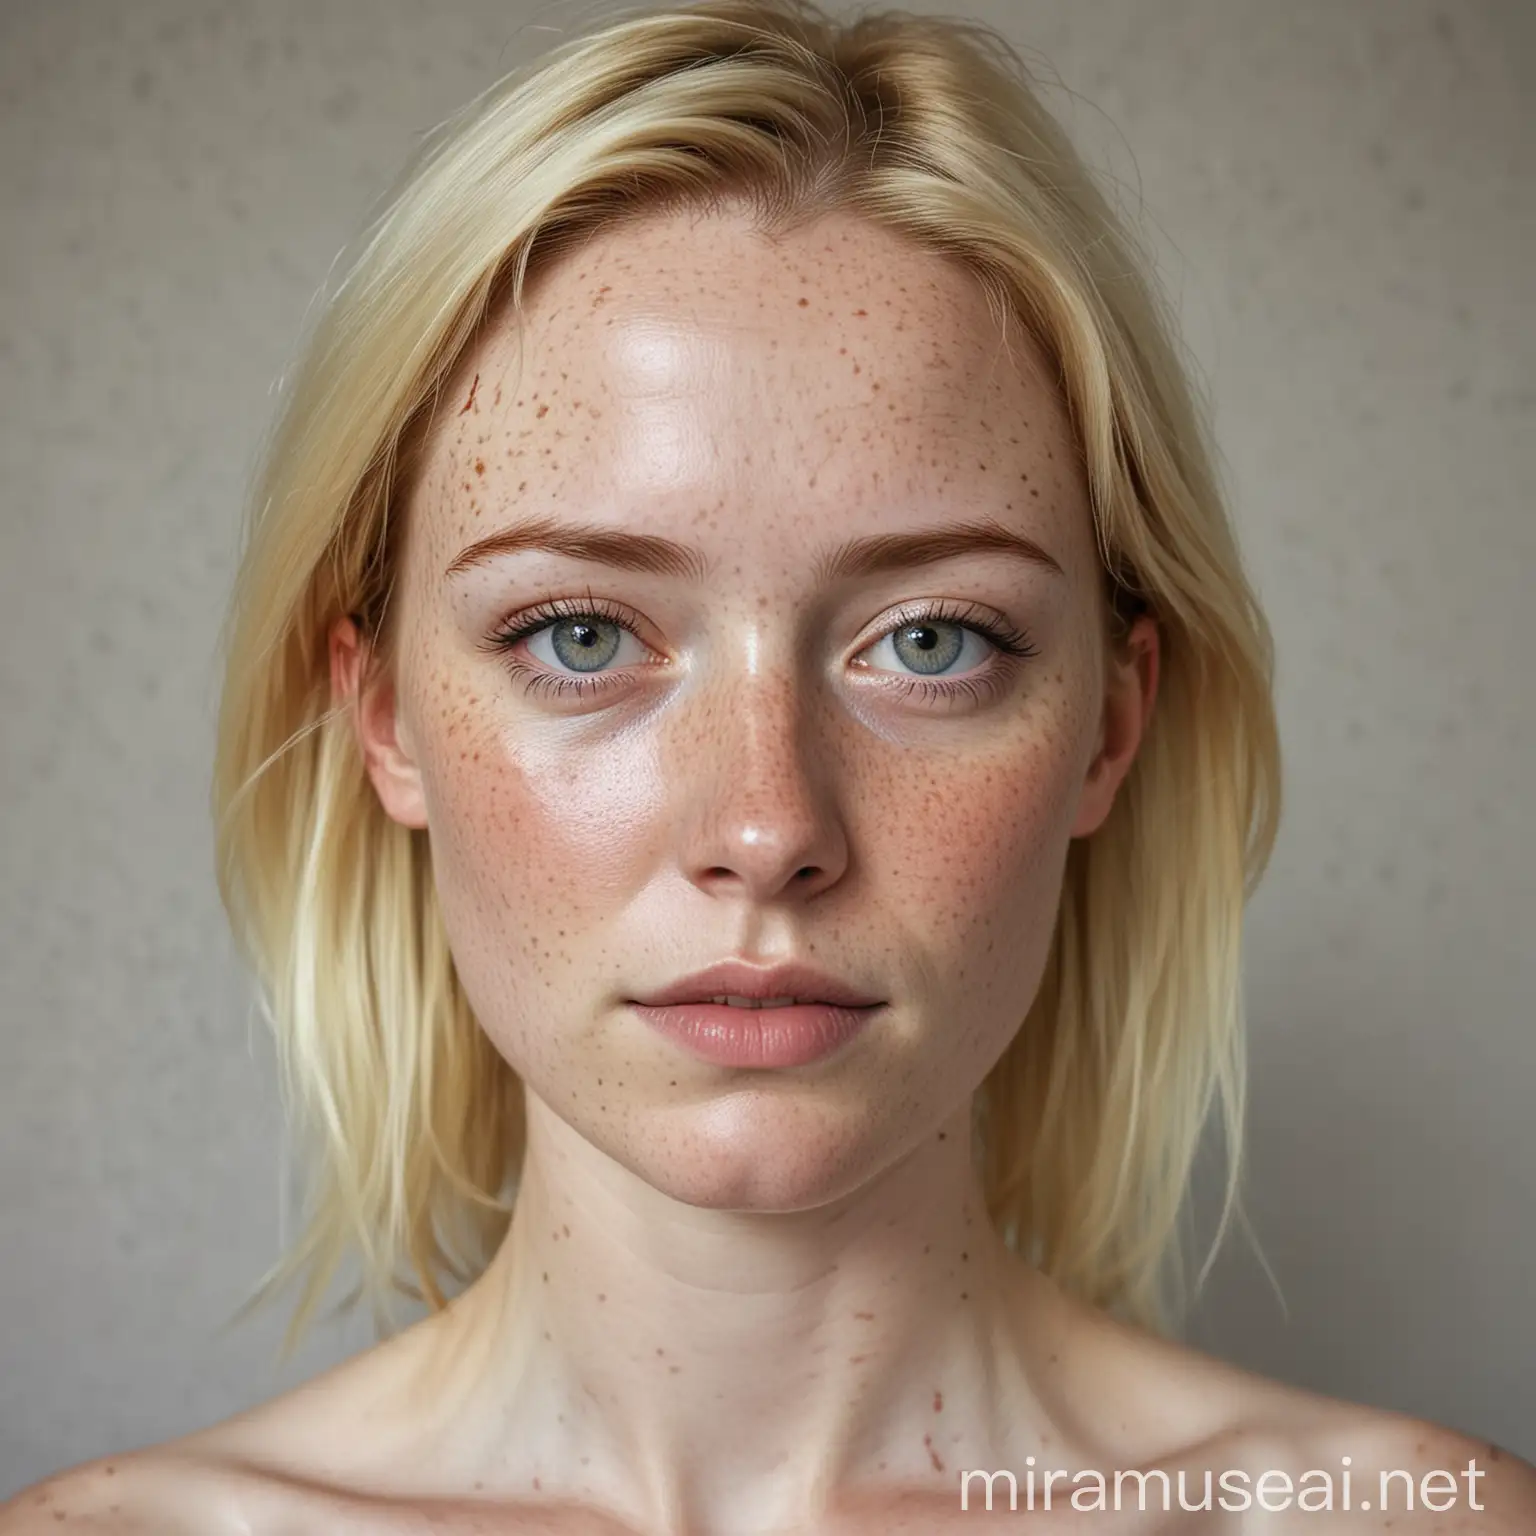 kvinde, 30 år, bleg med fregner, blond glat pagehår til ca. omkring nakken, kraftigt ansigt
